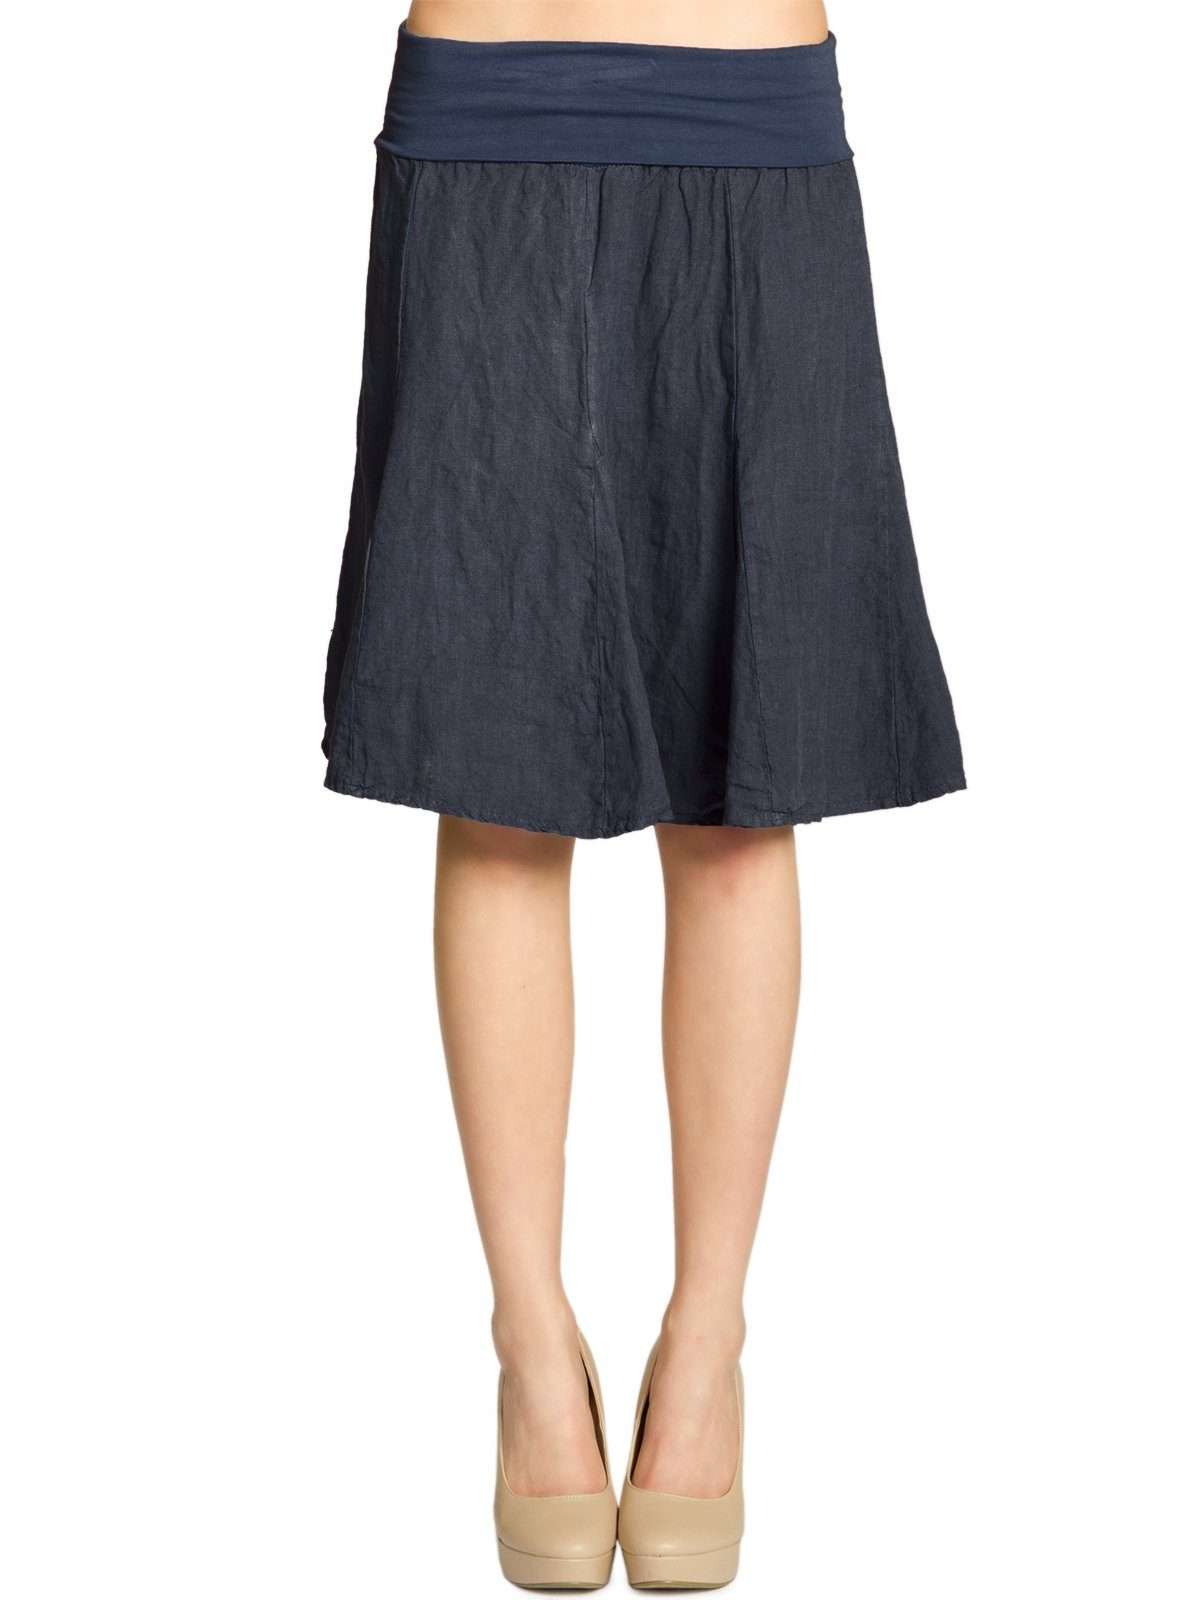 Юбка плиссе RO014 женская льняная юбка с удобным эластичным поясом